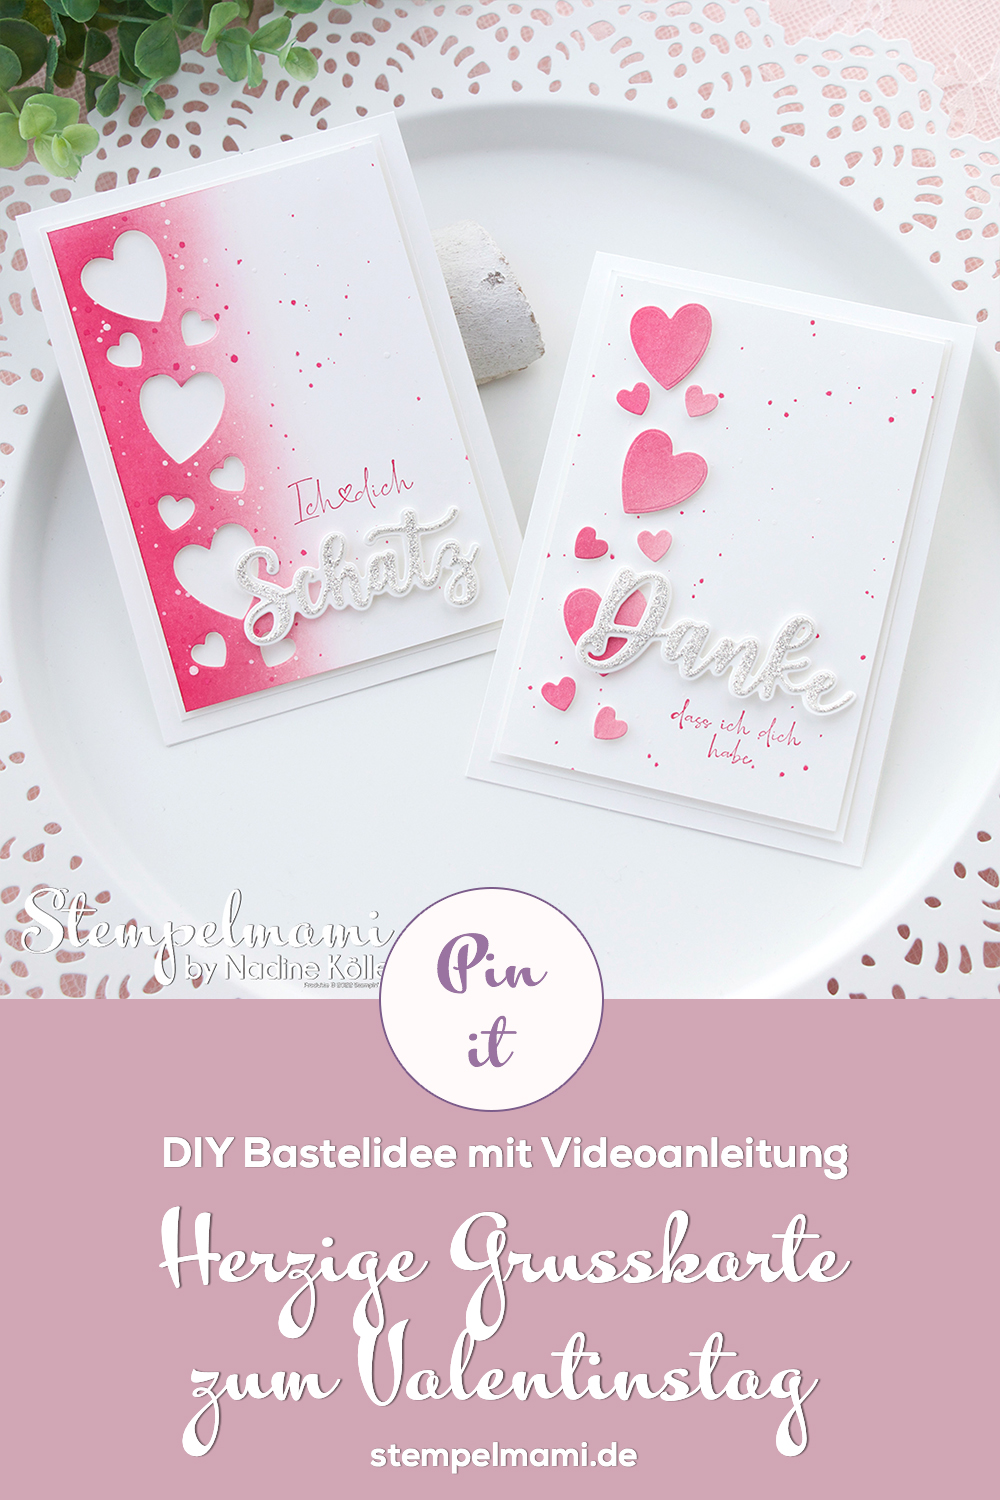 Stampin Up Video Anleitung herzige Grusskarte zum Valentinstag Stempelmami Youtube 9